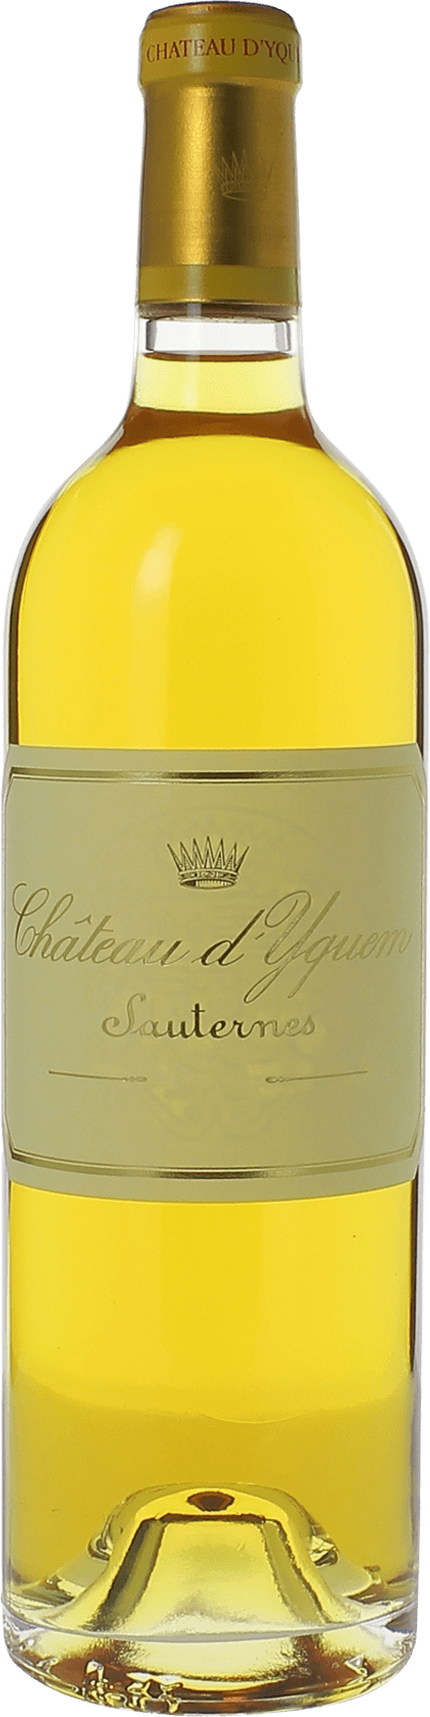 Yquem 1940 1er Grand cru class Sauternes, Bordeaux blanc